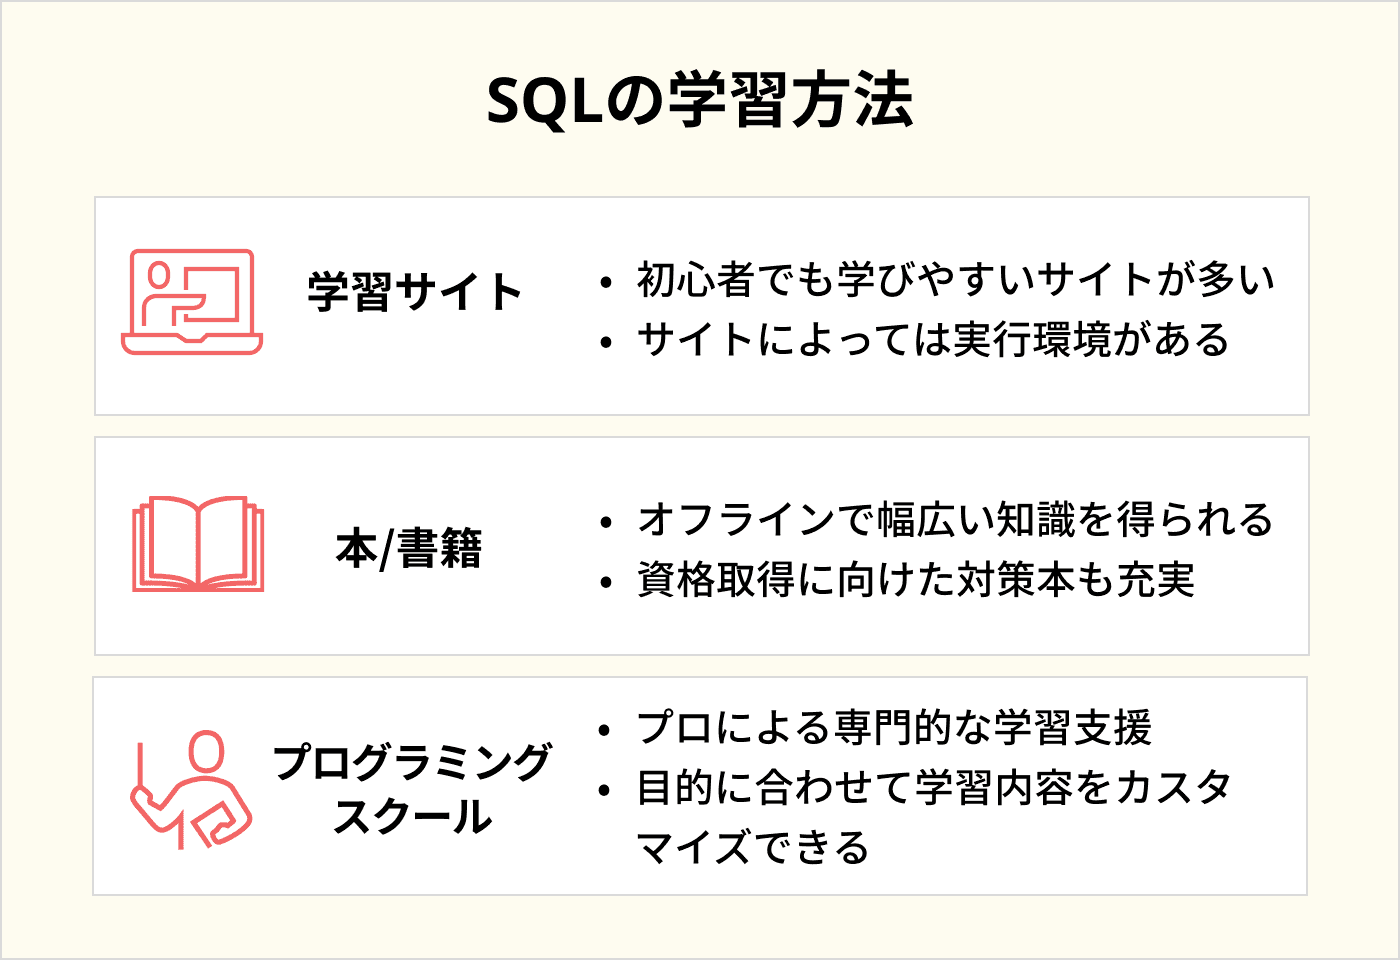 SQLの学習方法